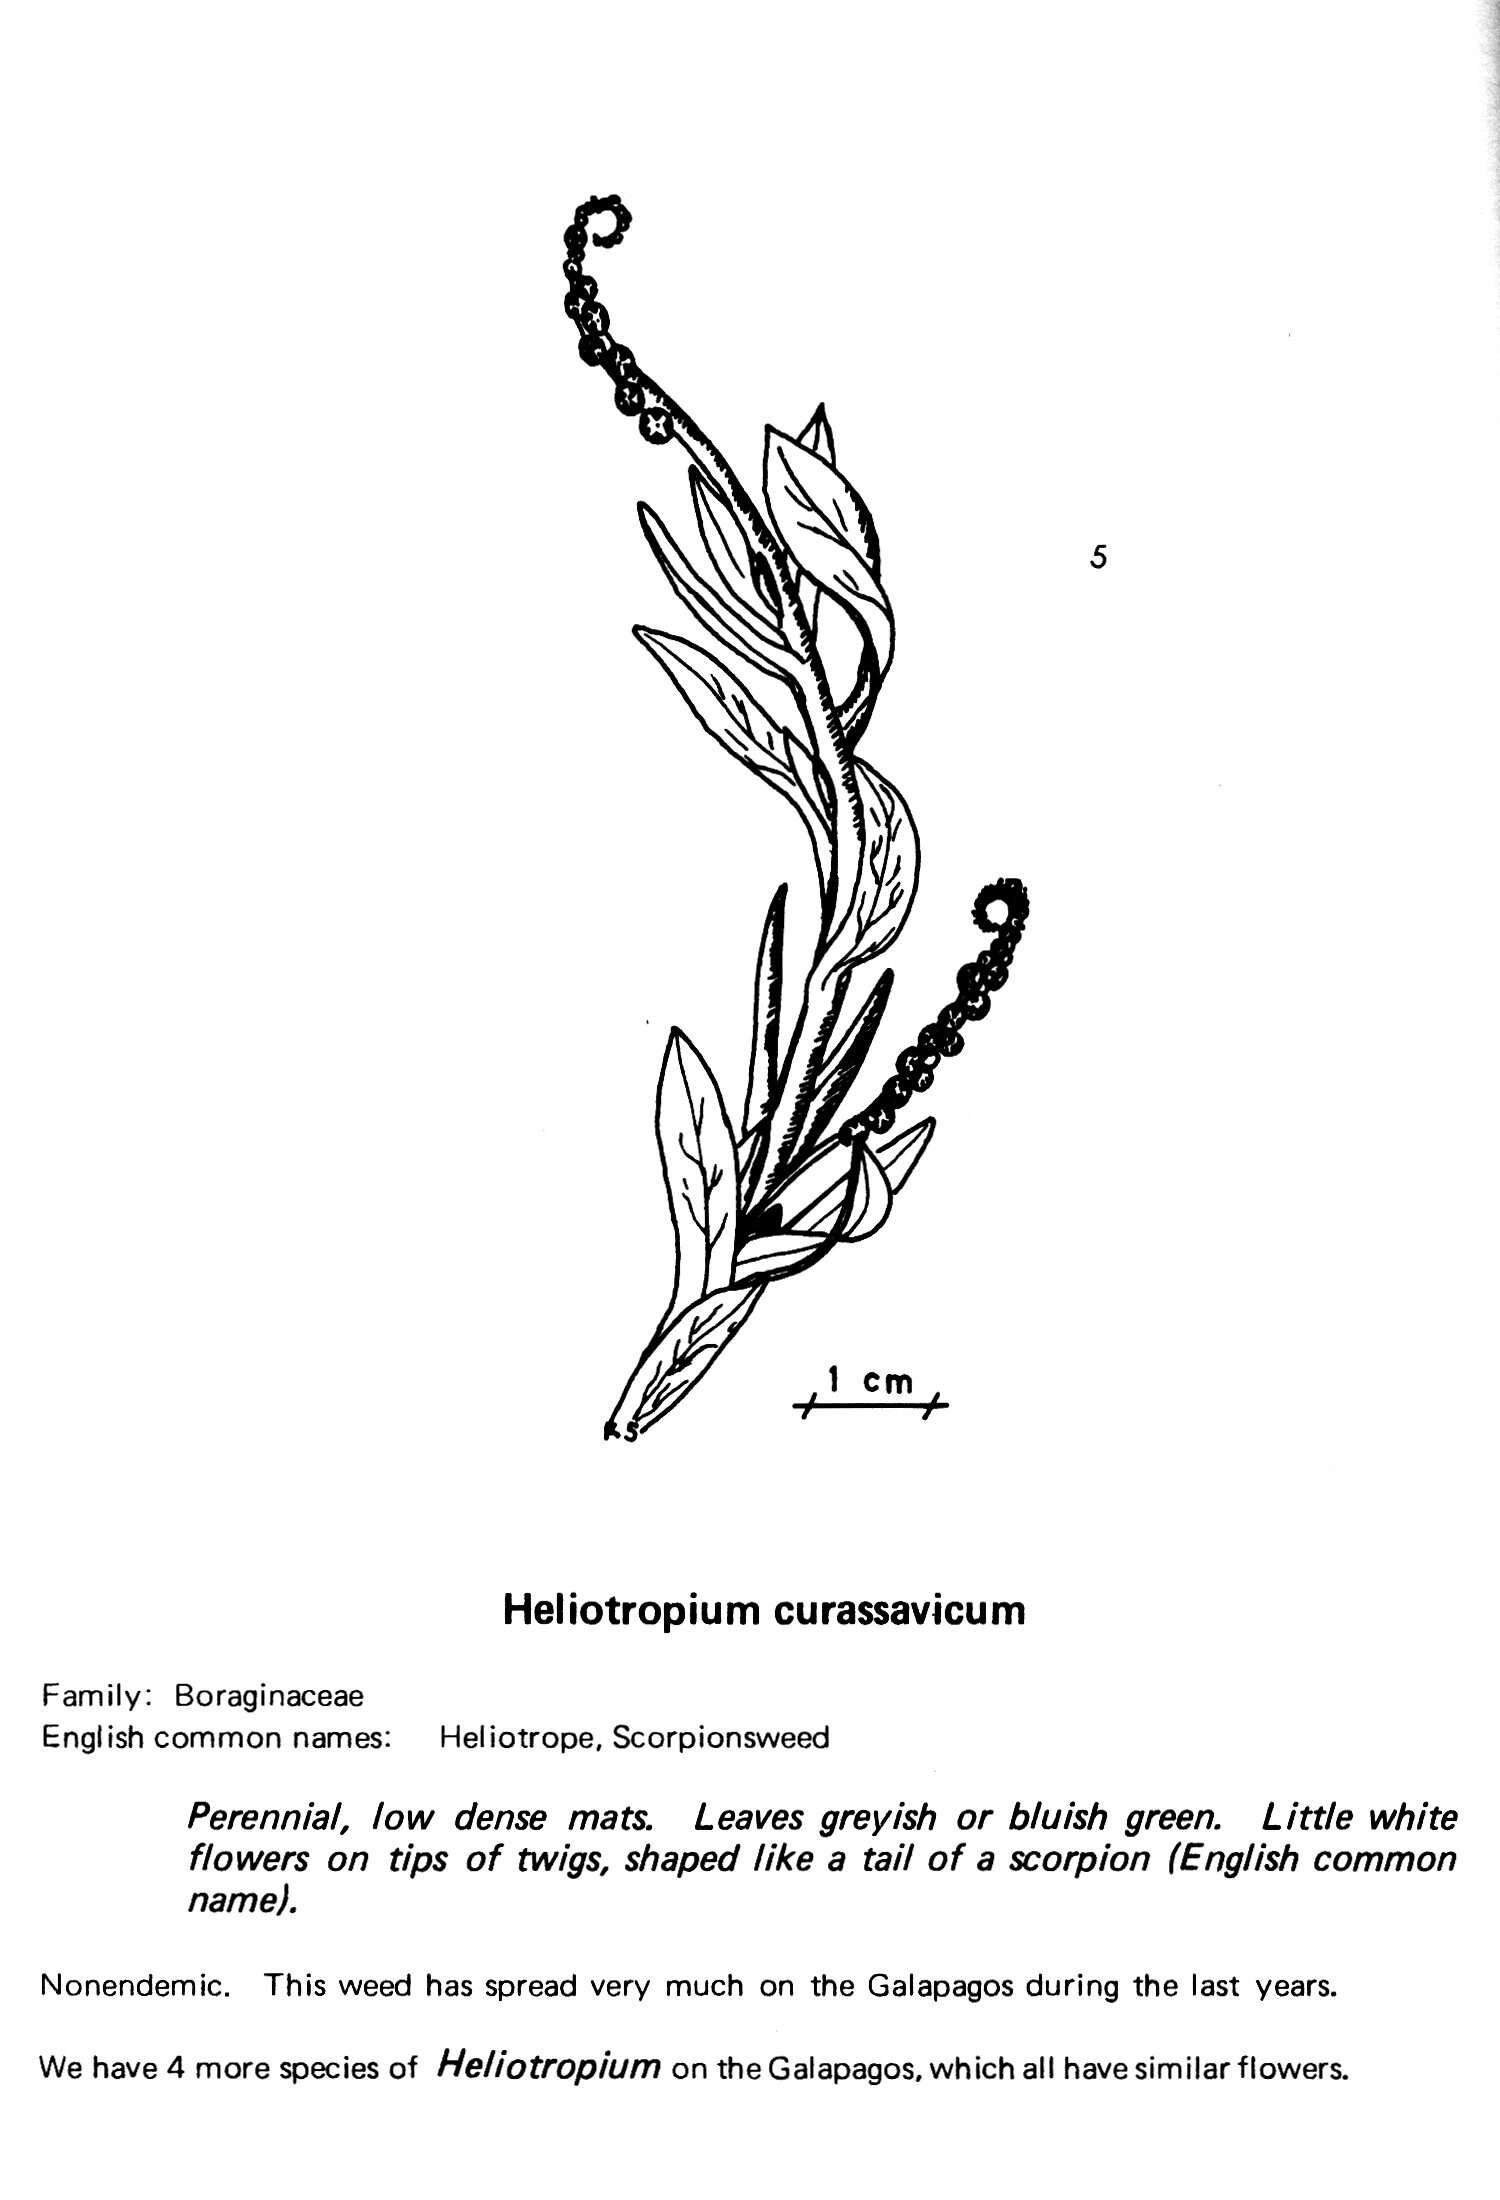 Image of salt heliotrope